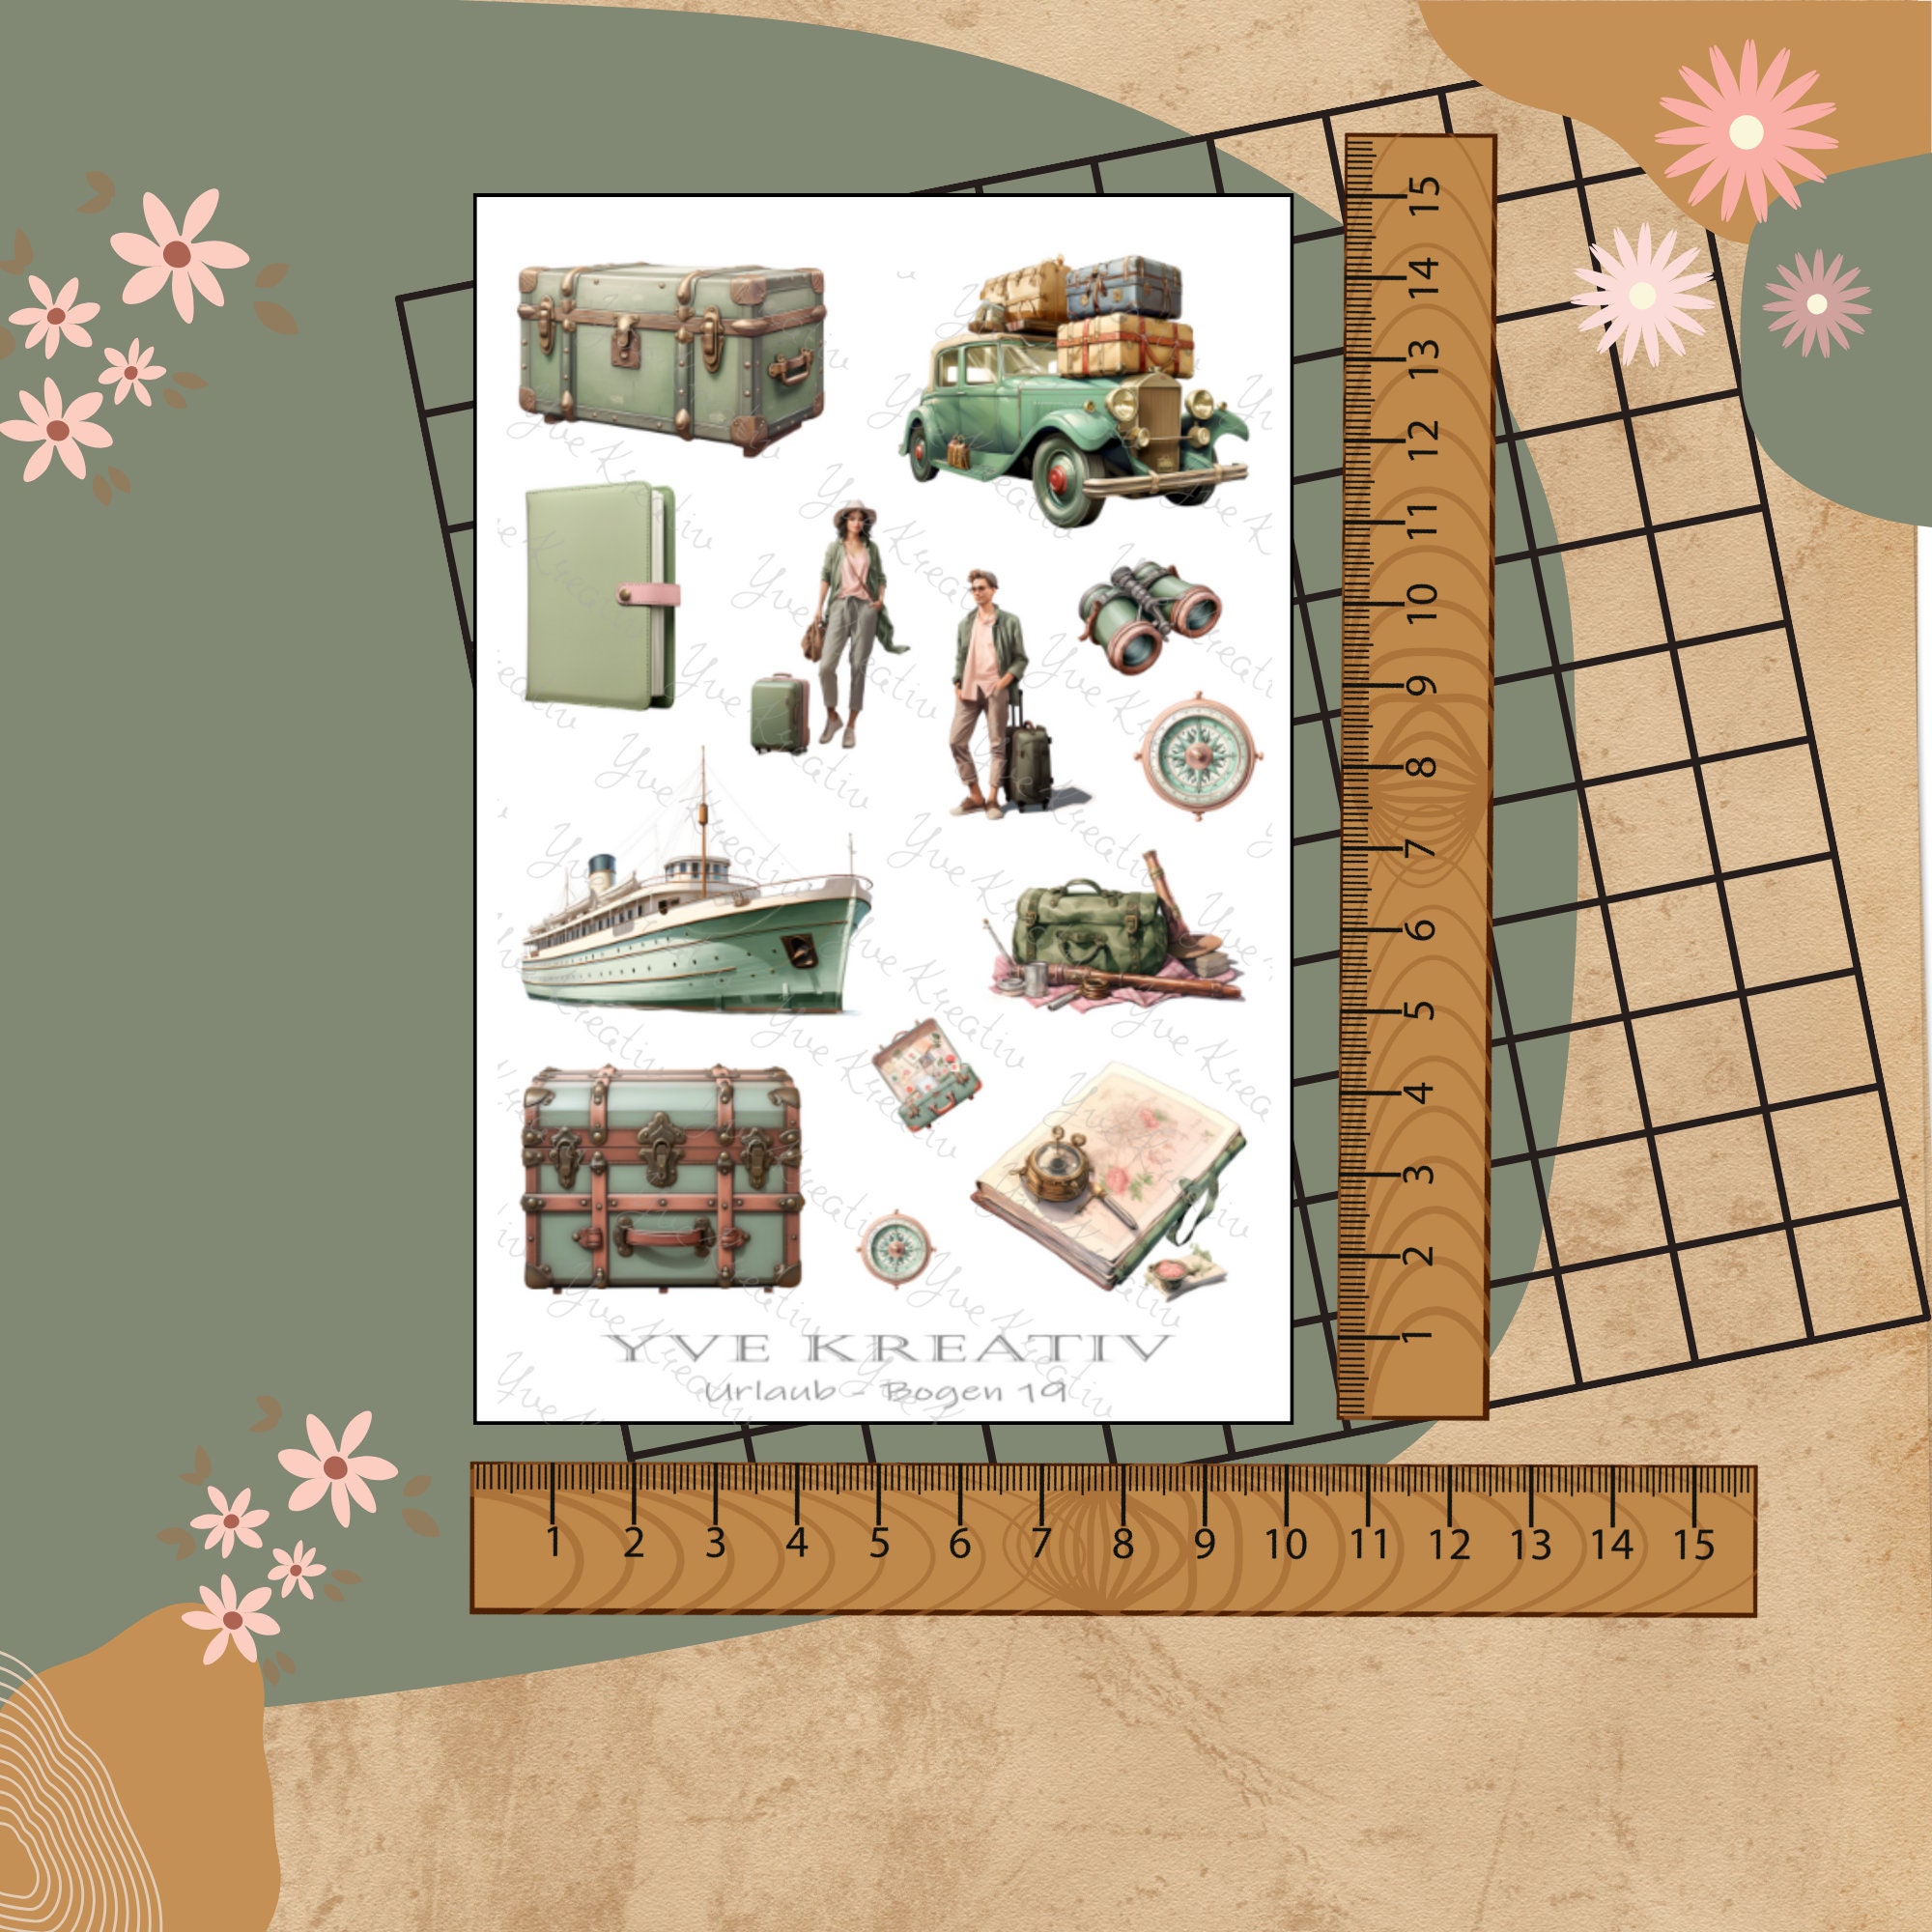 Sticker Bogen " Urlaub Reise Fernweh " | Sticker Set - Aufkleber 3 Stickerbogen zur Auswahl in Weiß - Transparent - Matt - Glanz